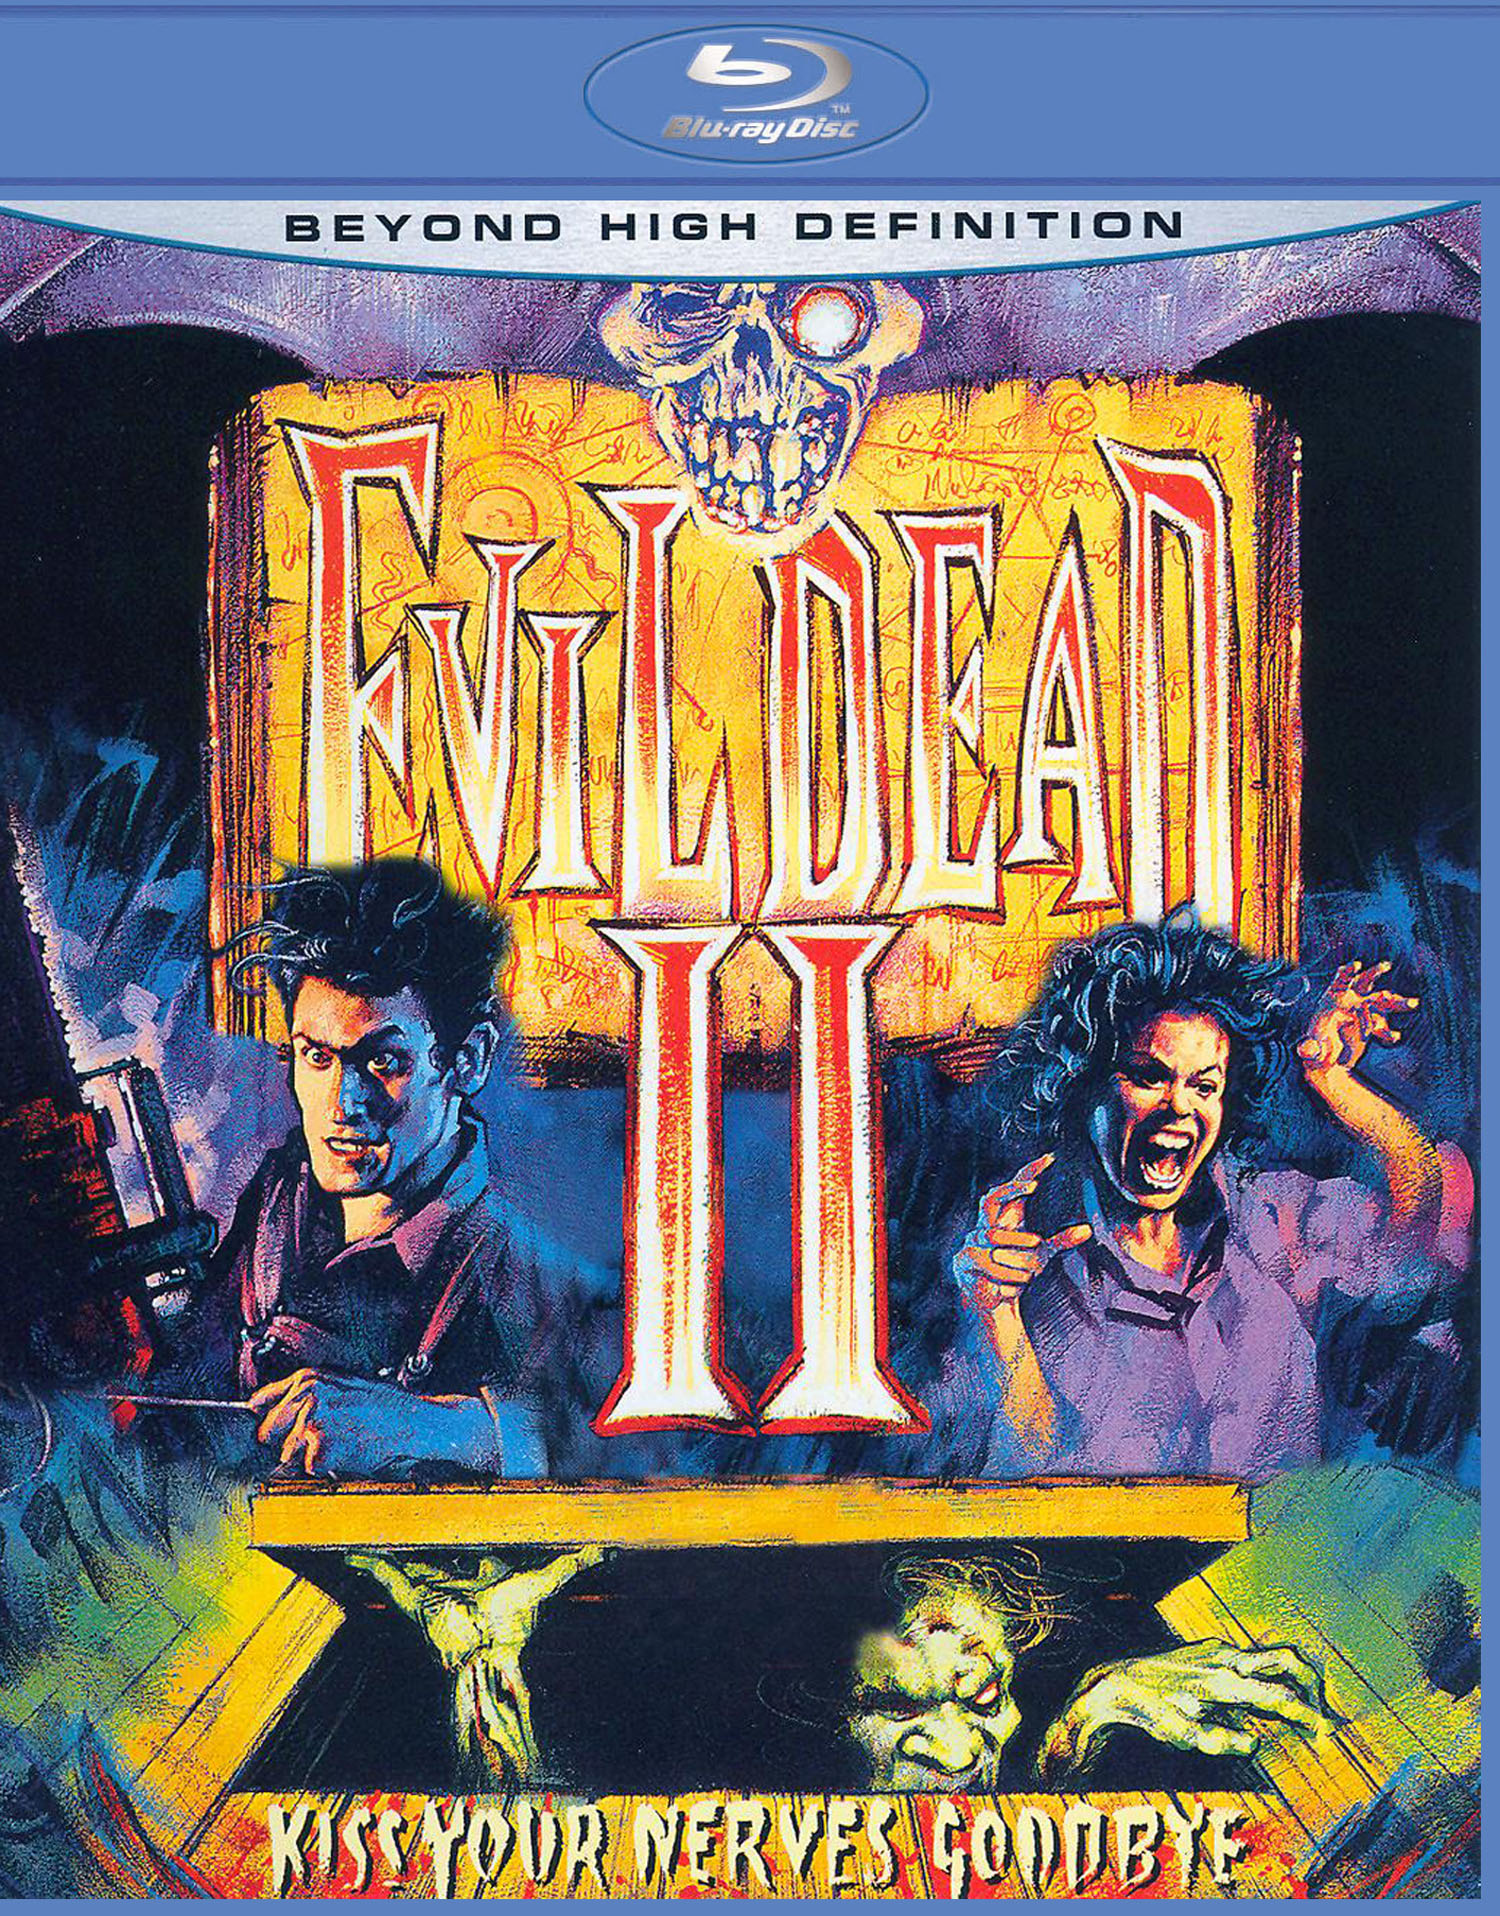 Evil Dead 2 – IFC Center